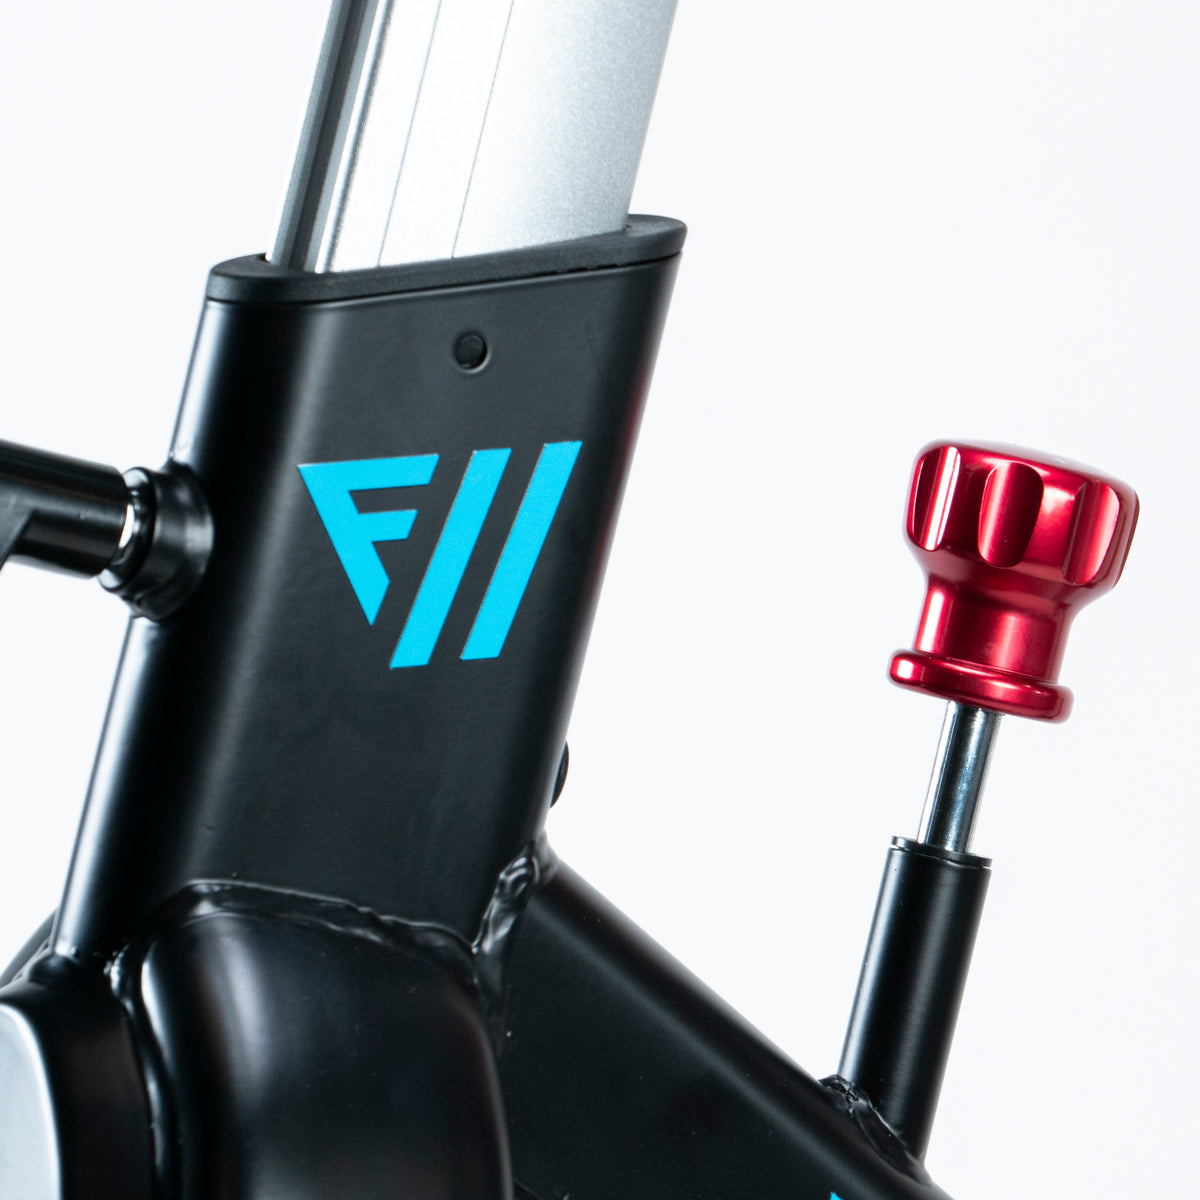 FitWay Equip. 1500IC Indoor Cycle adjustment view